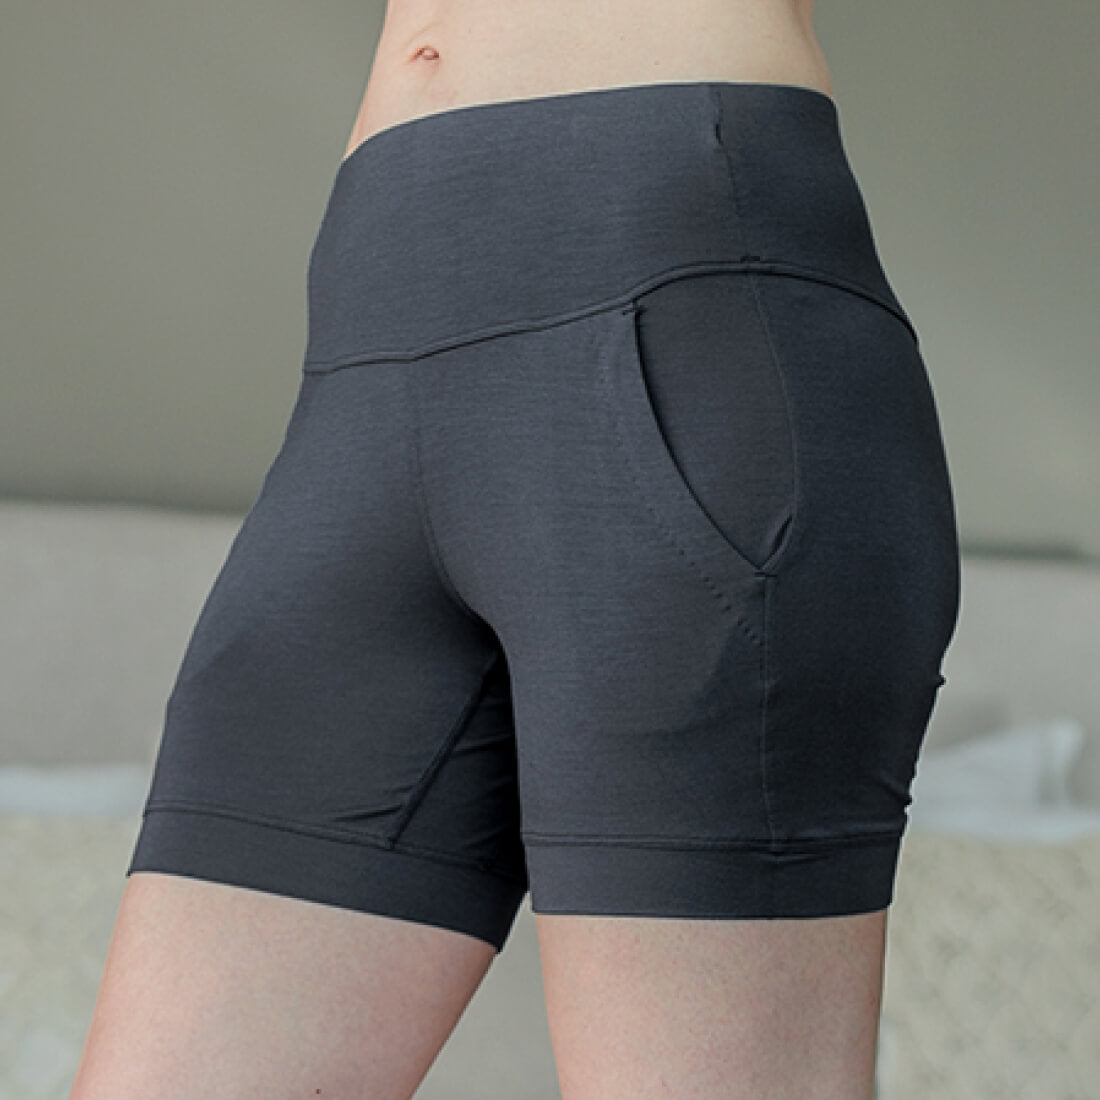 Balance shorts women || Deep grey